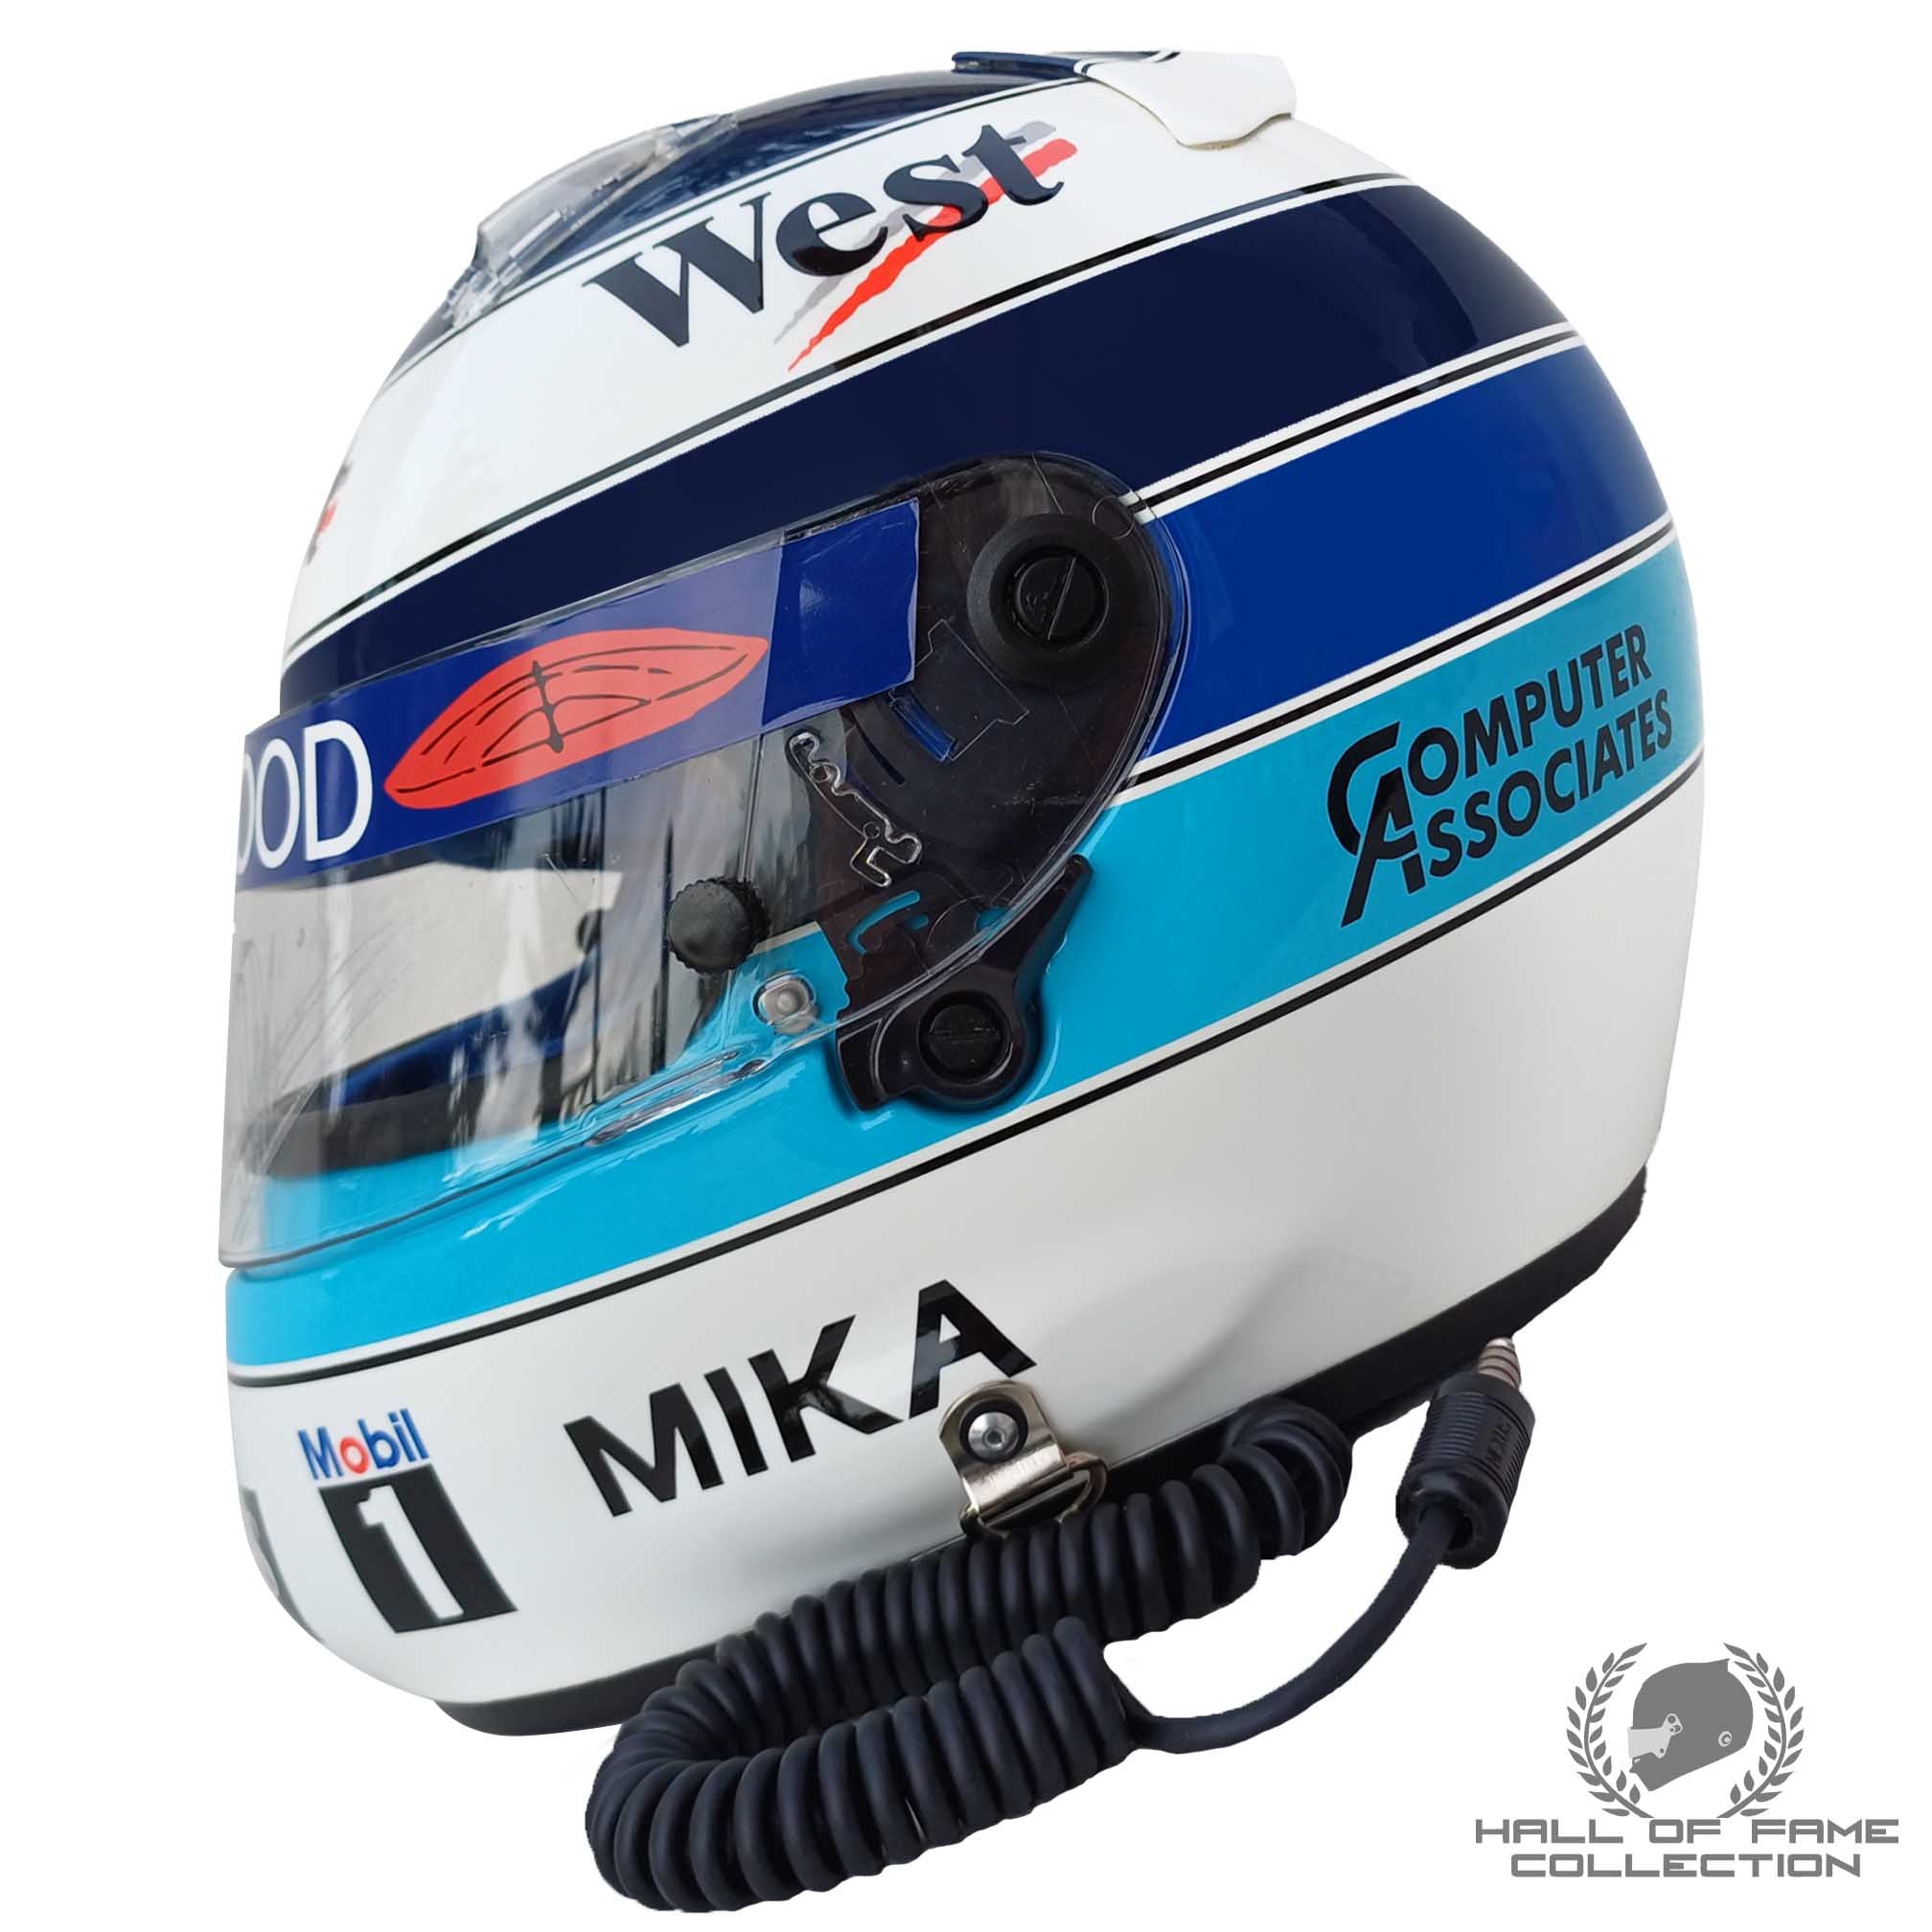 1997 Mika Hakkinen Signed Replica West McLaren Mercedes Shoei X4 F1 Helmet